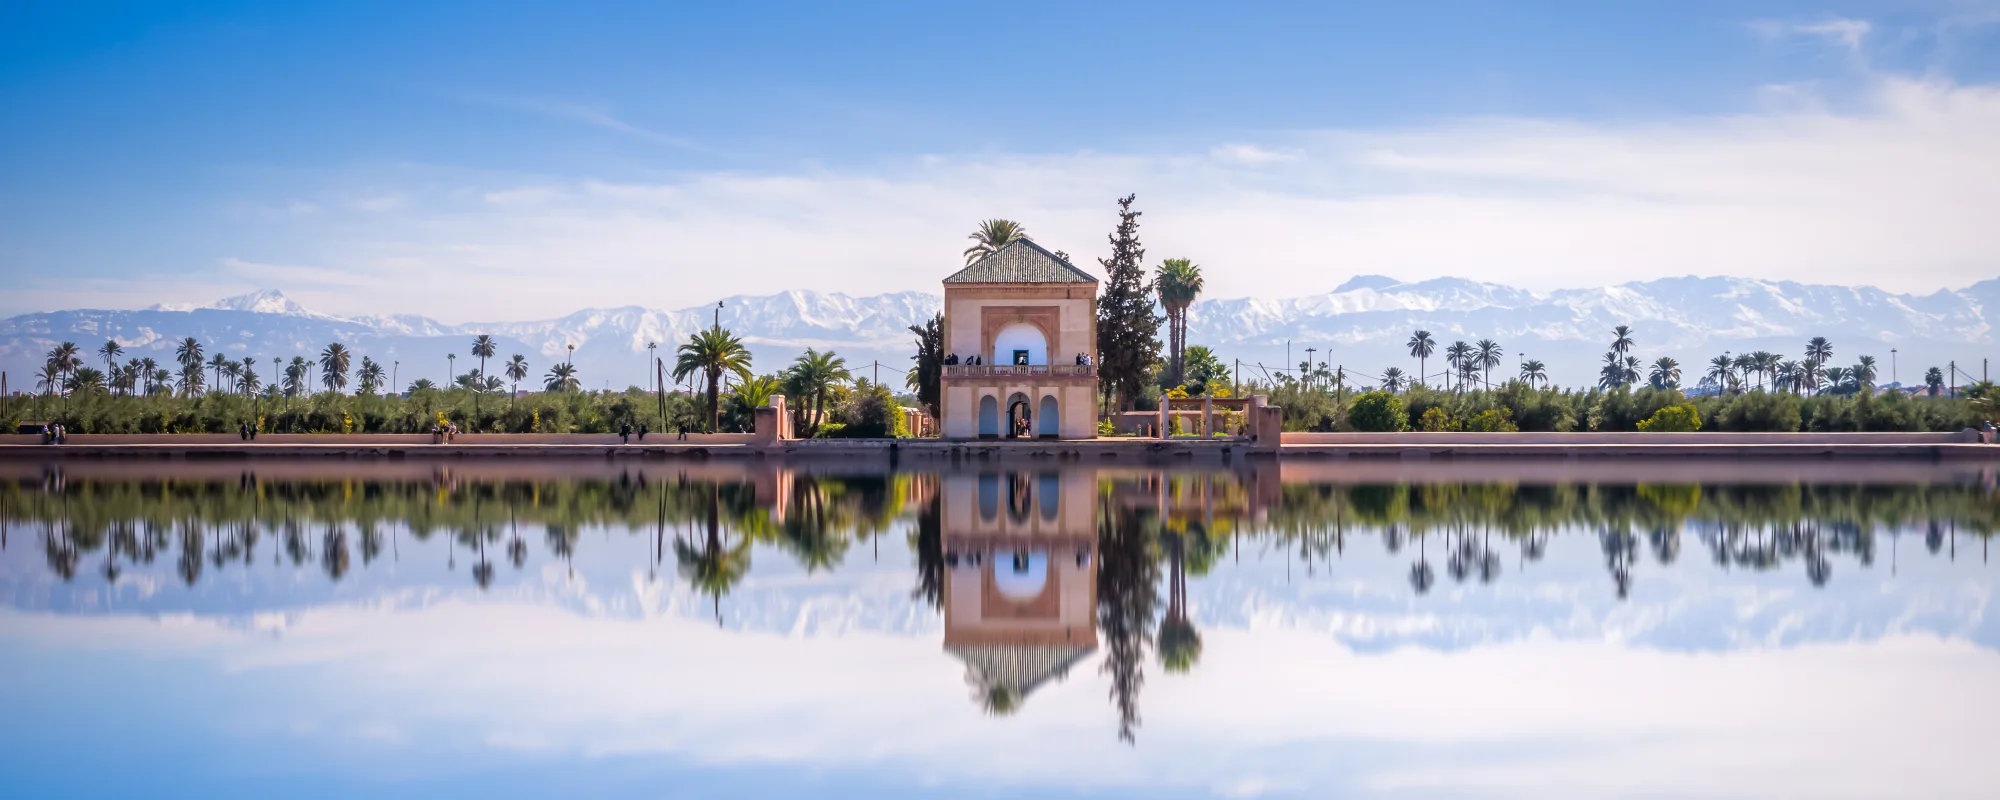 saadian-pavilion-marrakech-morocco-tours